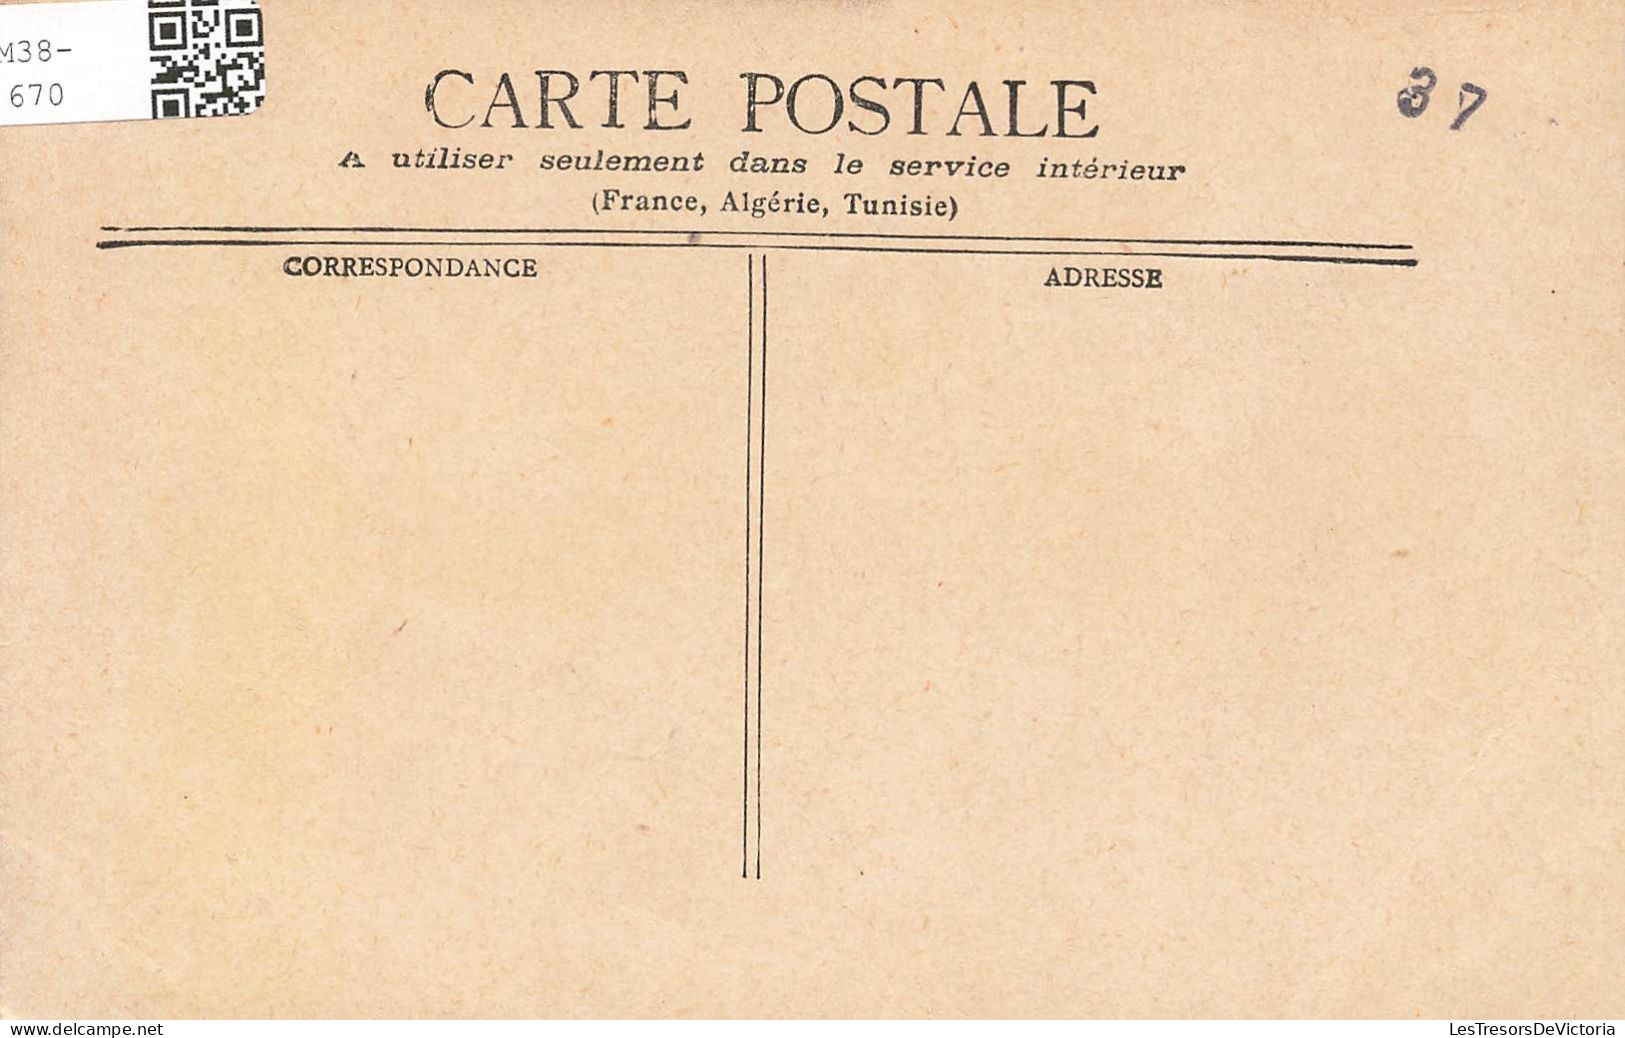 FRANCE - Tours - La Cathédrale - Carte Postale Ancienne - Tours